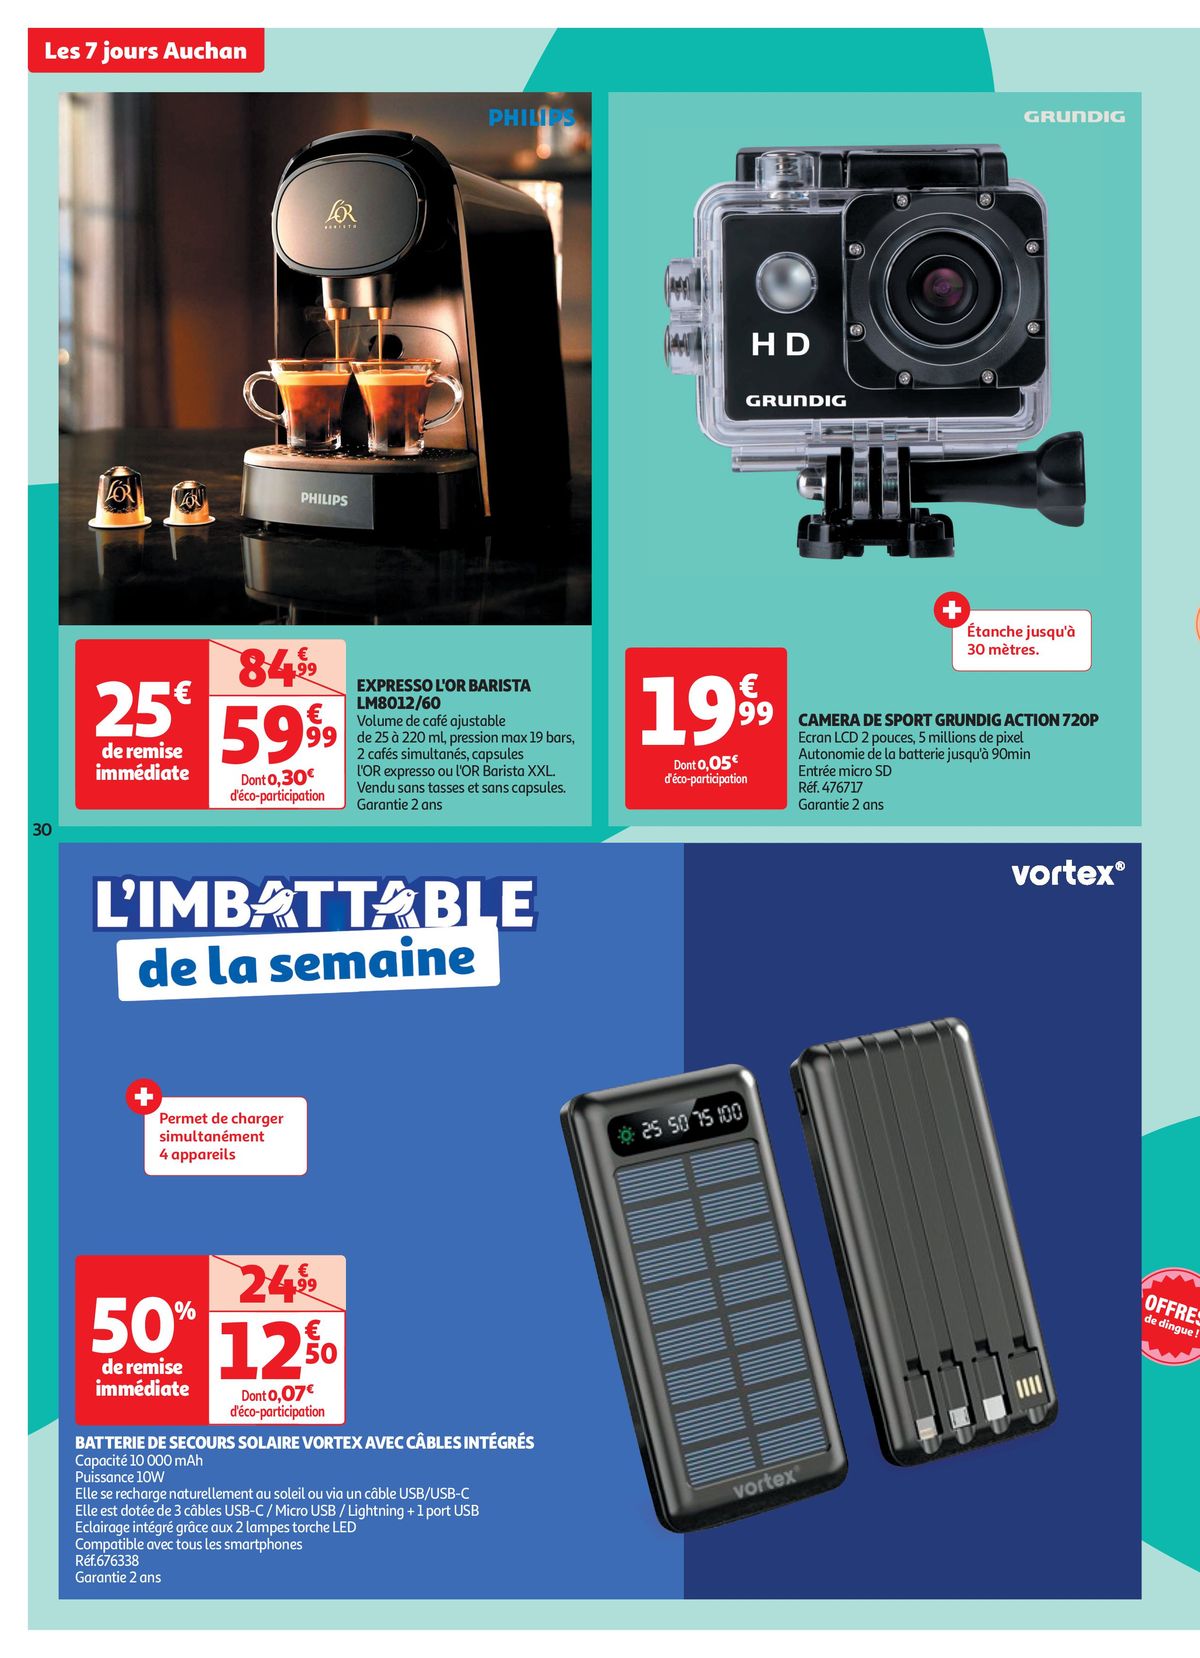 Catalogue C'est les 7 jours Auchan dans votre super !, page 00030